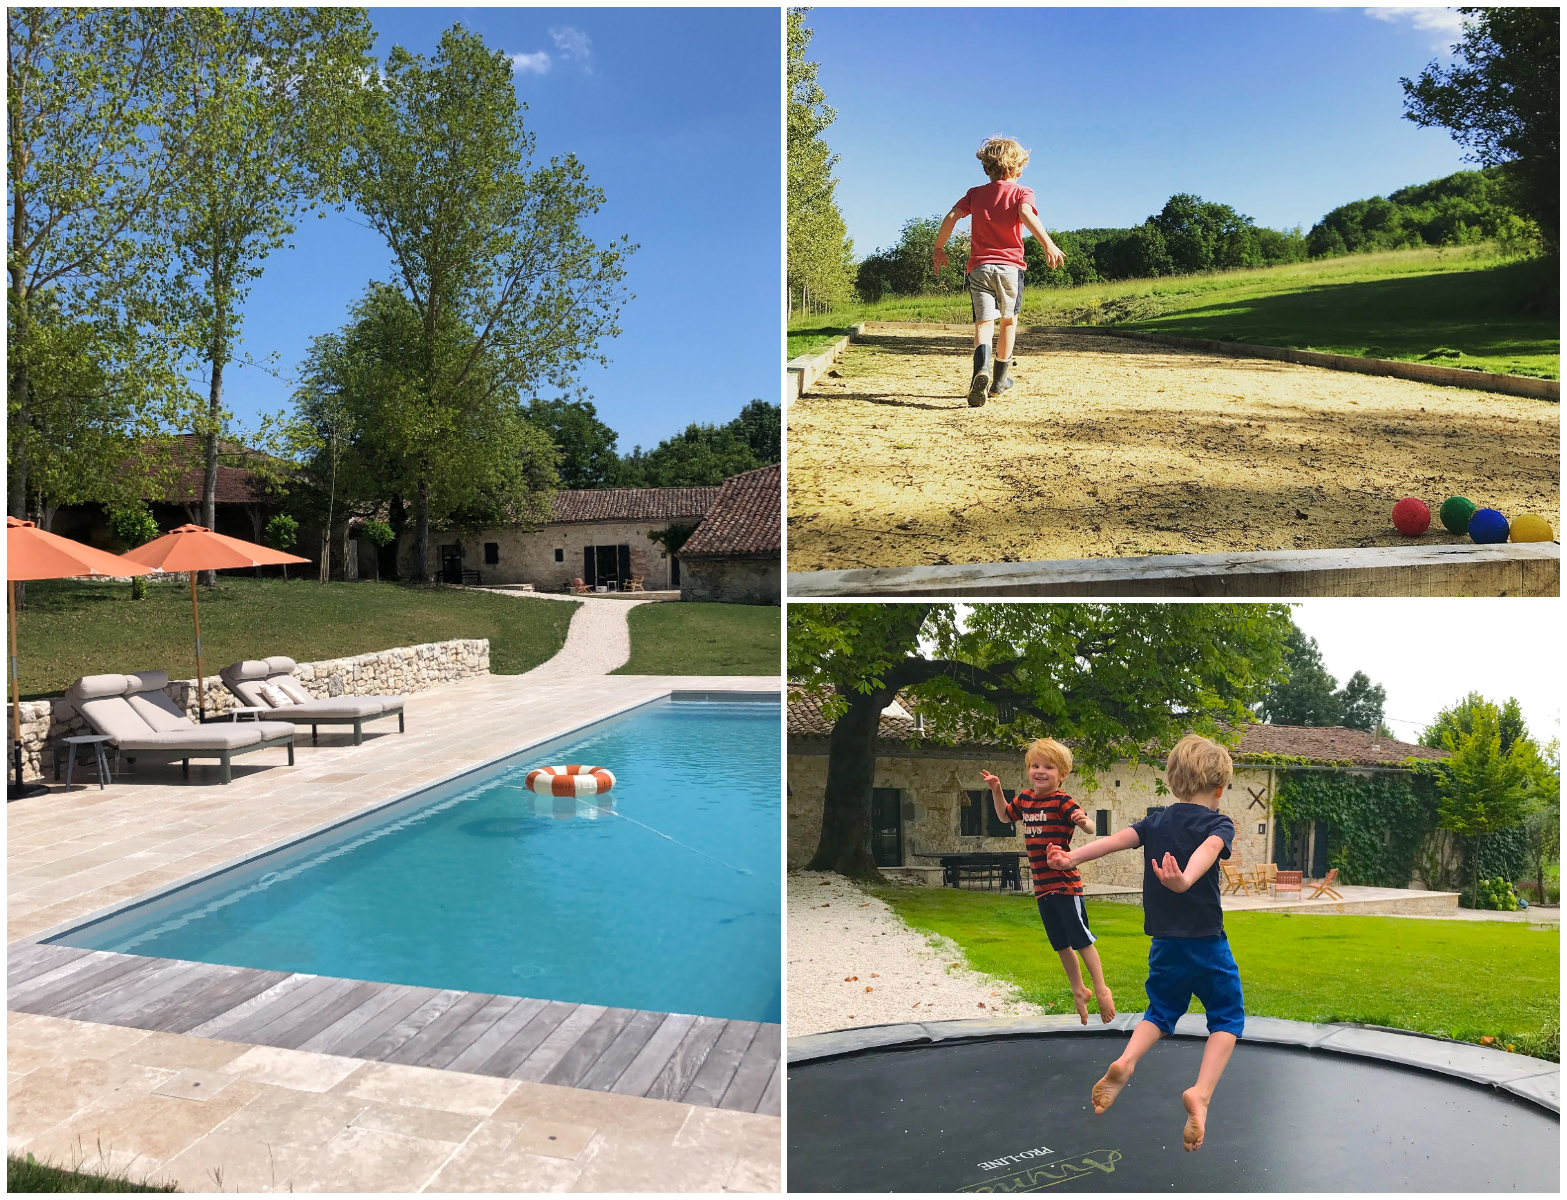 vakantiehuis-palanchou-met-zwembad-franse-plattand-luxe-kindvriendelijk